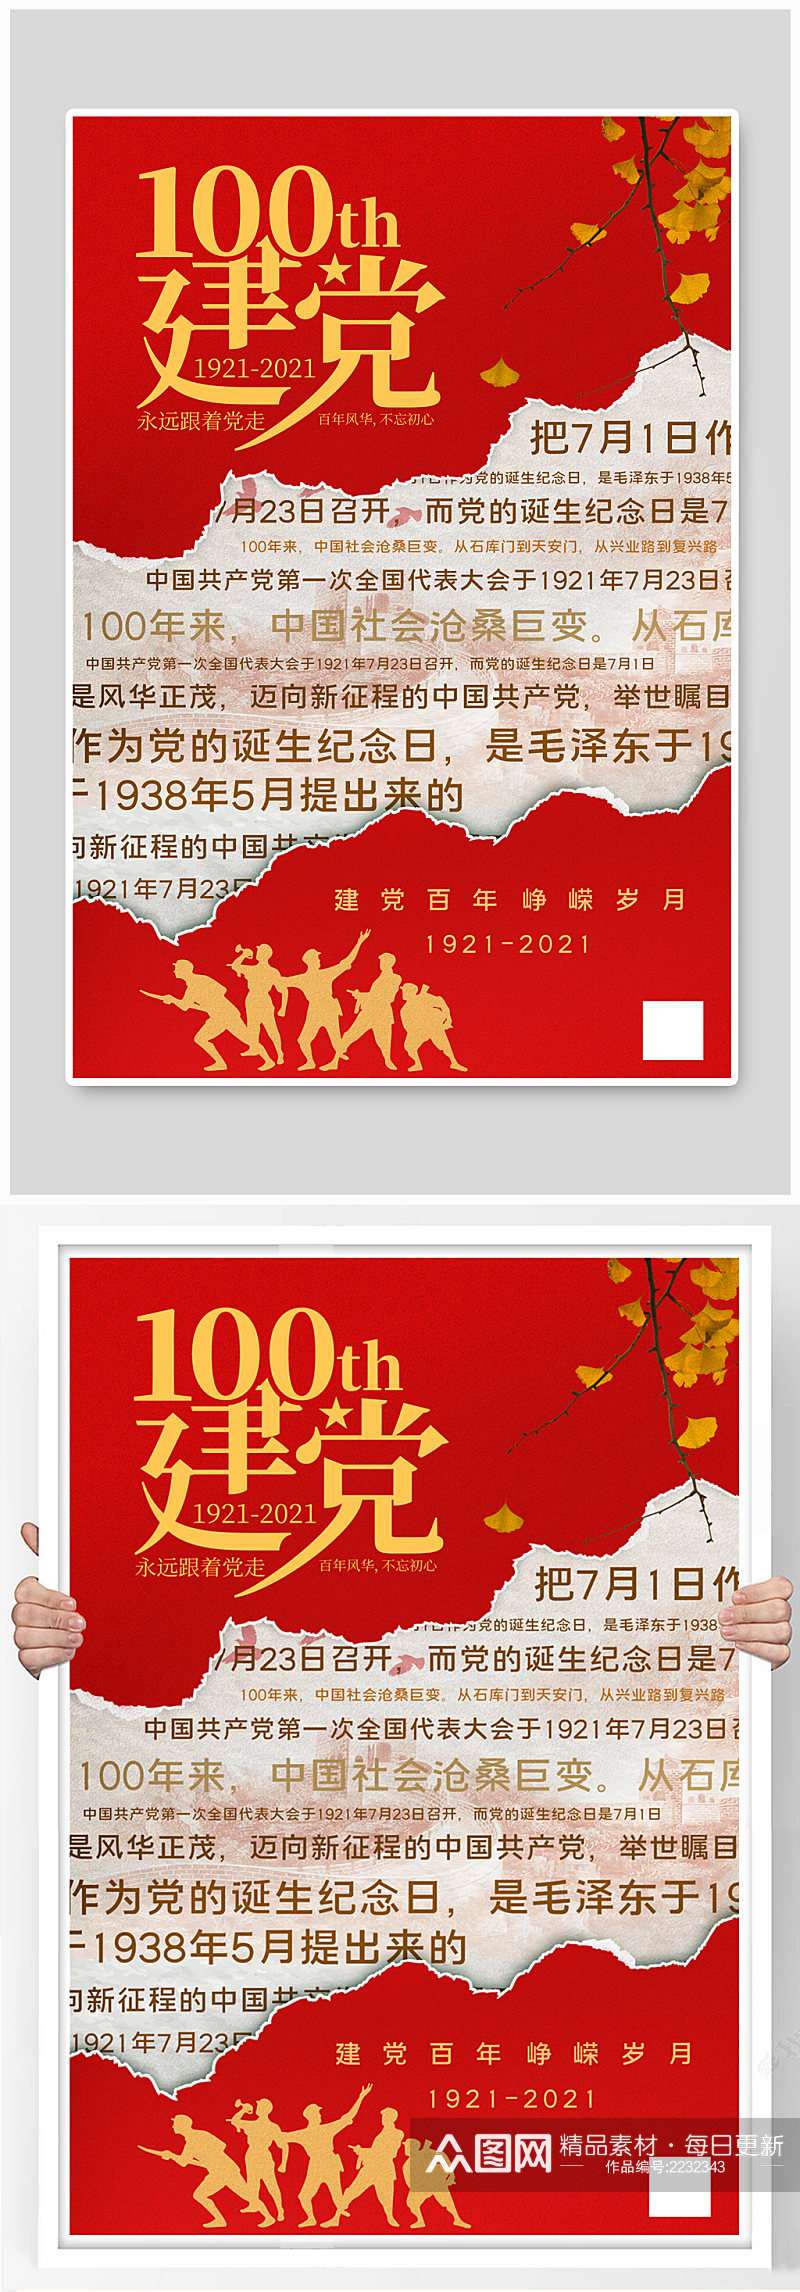 红色撕纸背景建党100周年宣传海报素材